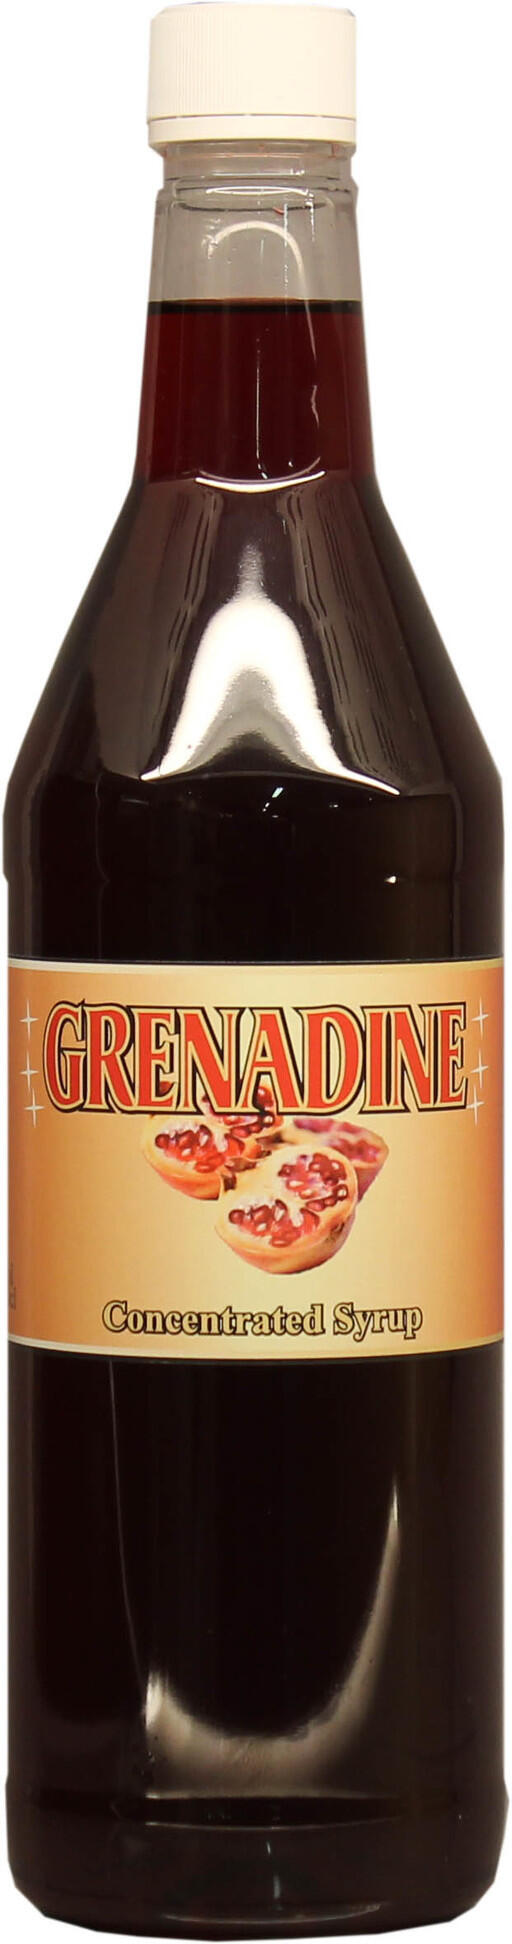 Grenadine är en god drinkingrediens och komplement i många drinkklassiker.